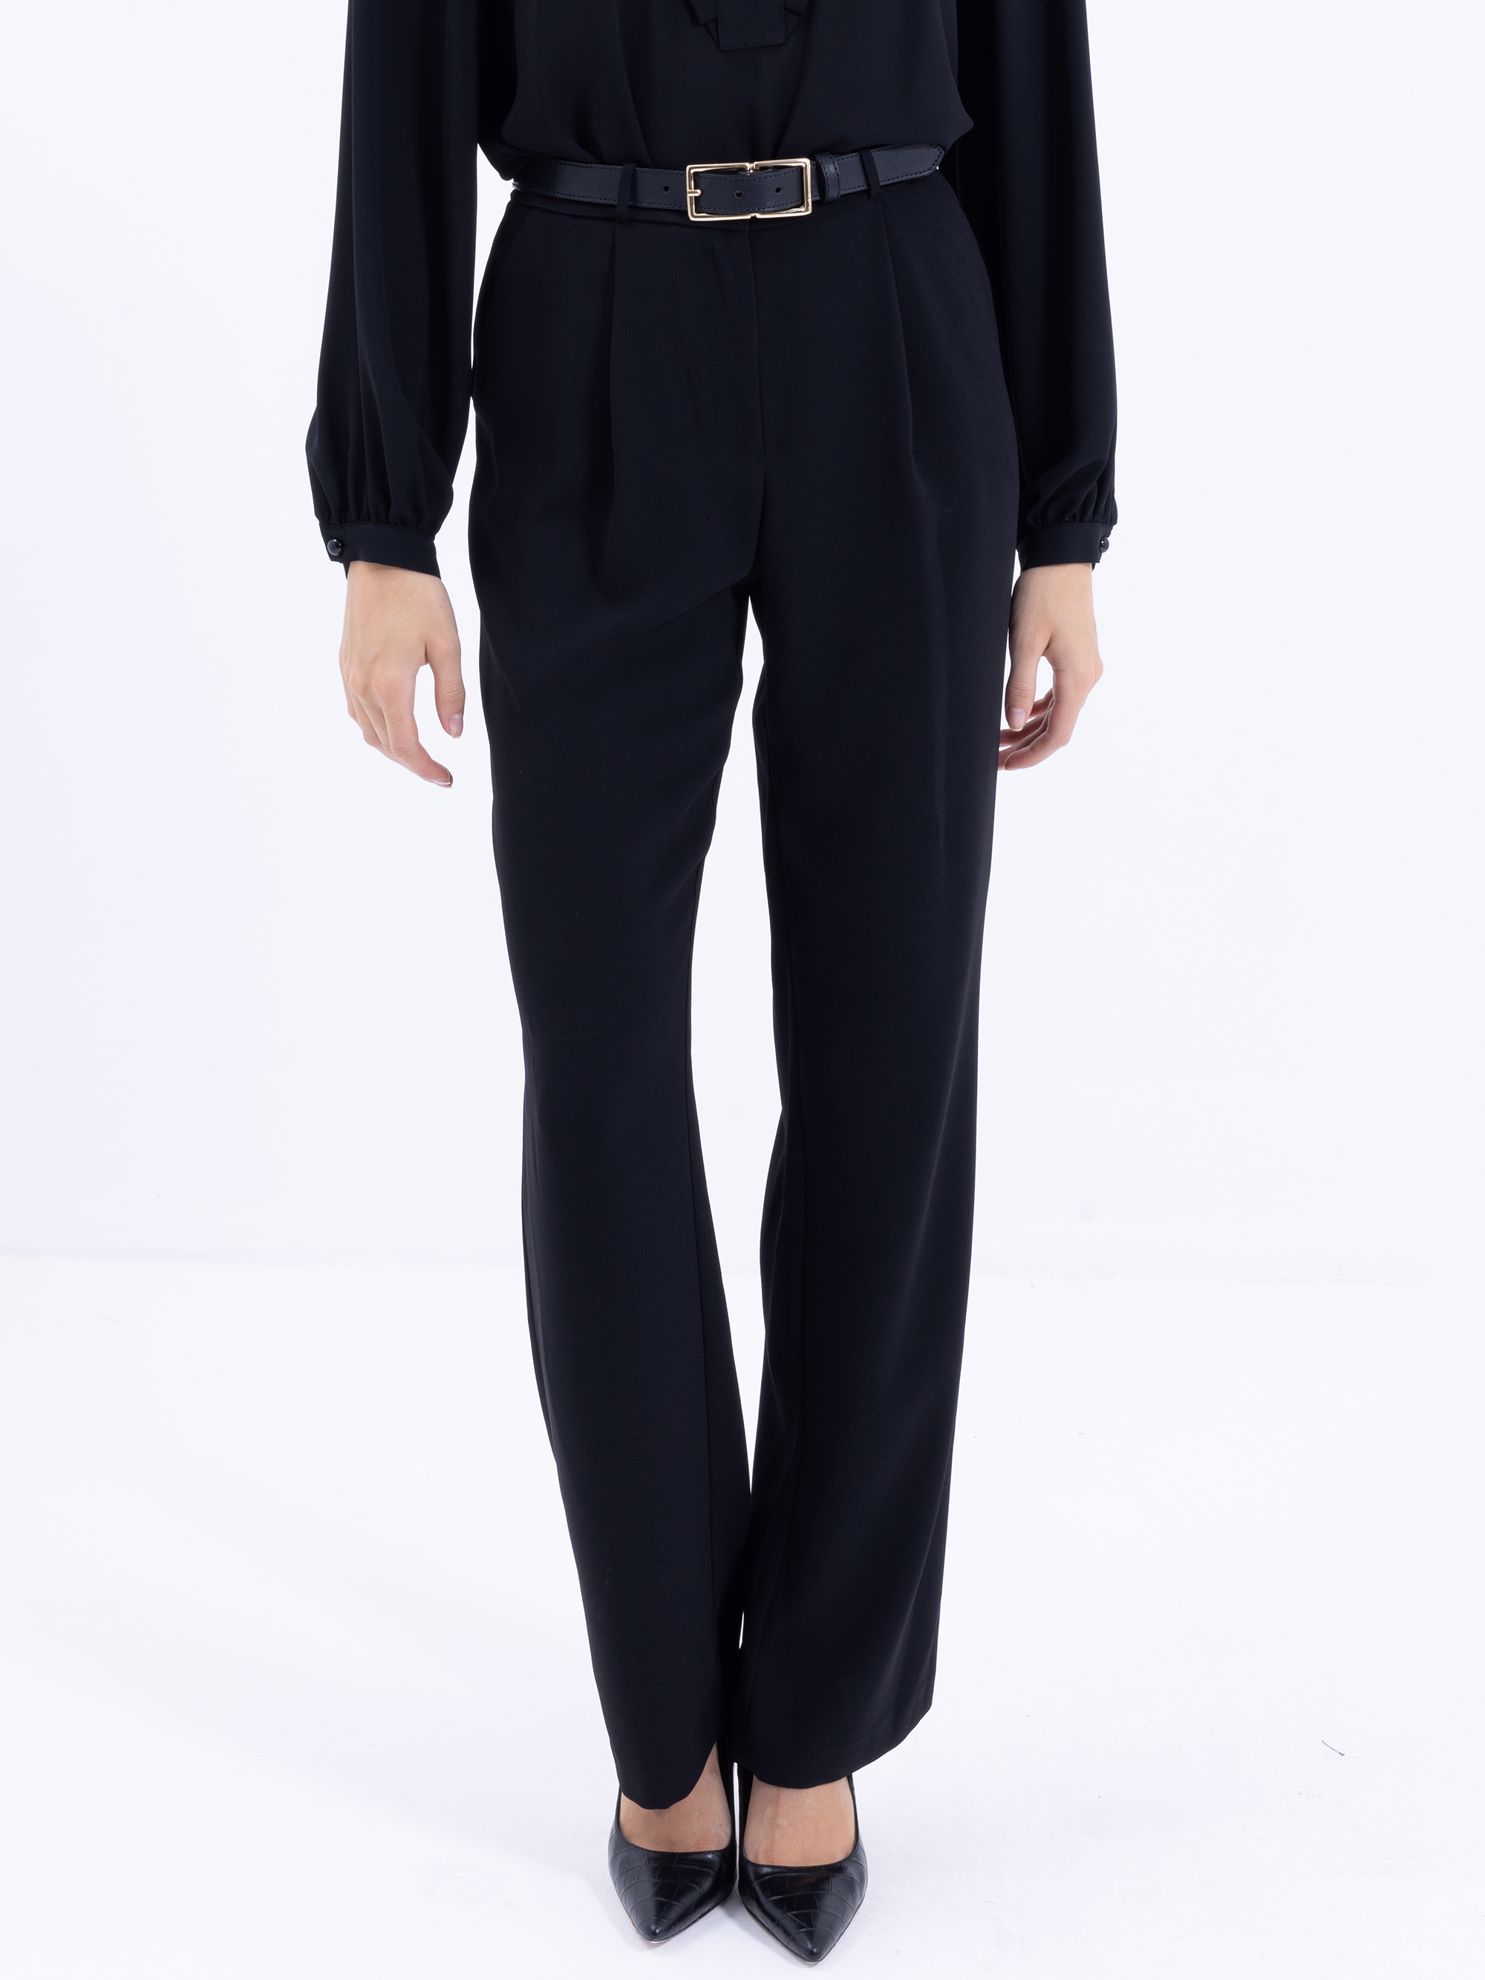 Karaca Kadın Ceket-Siyah. ürün görseli